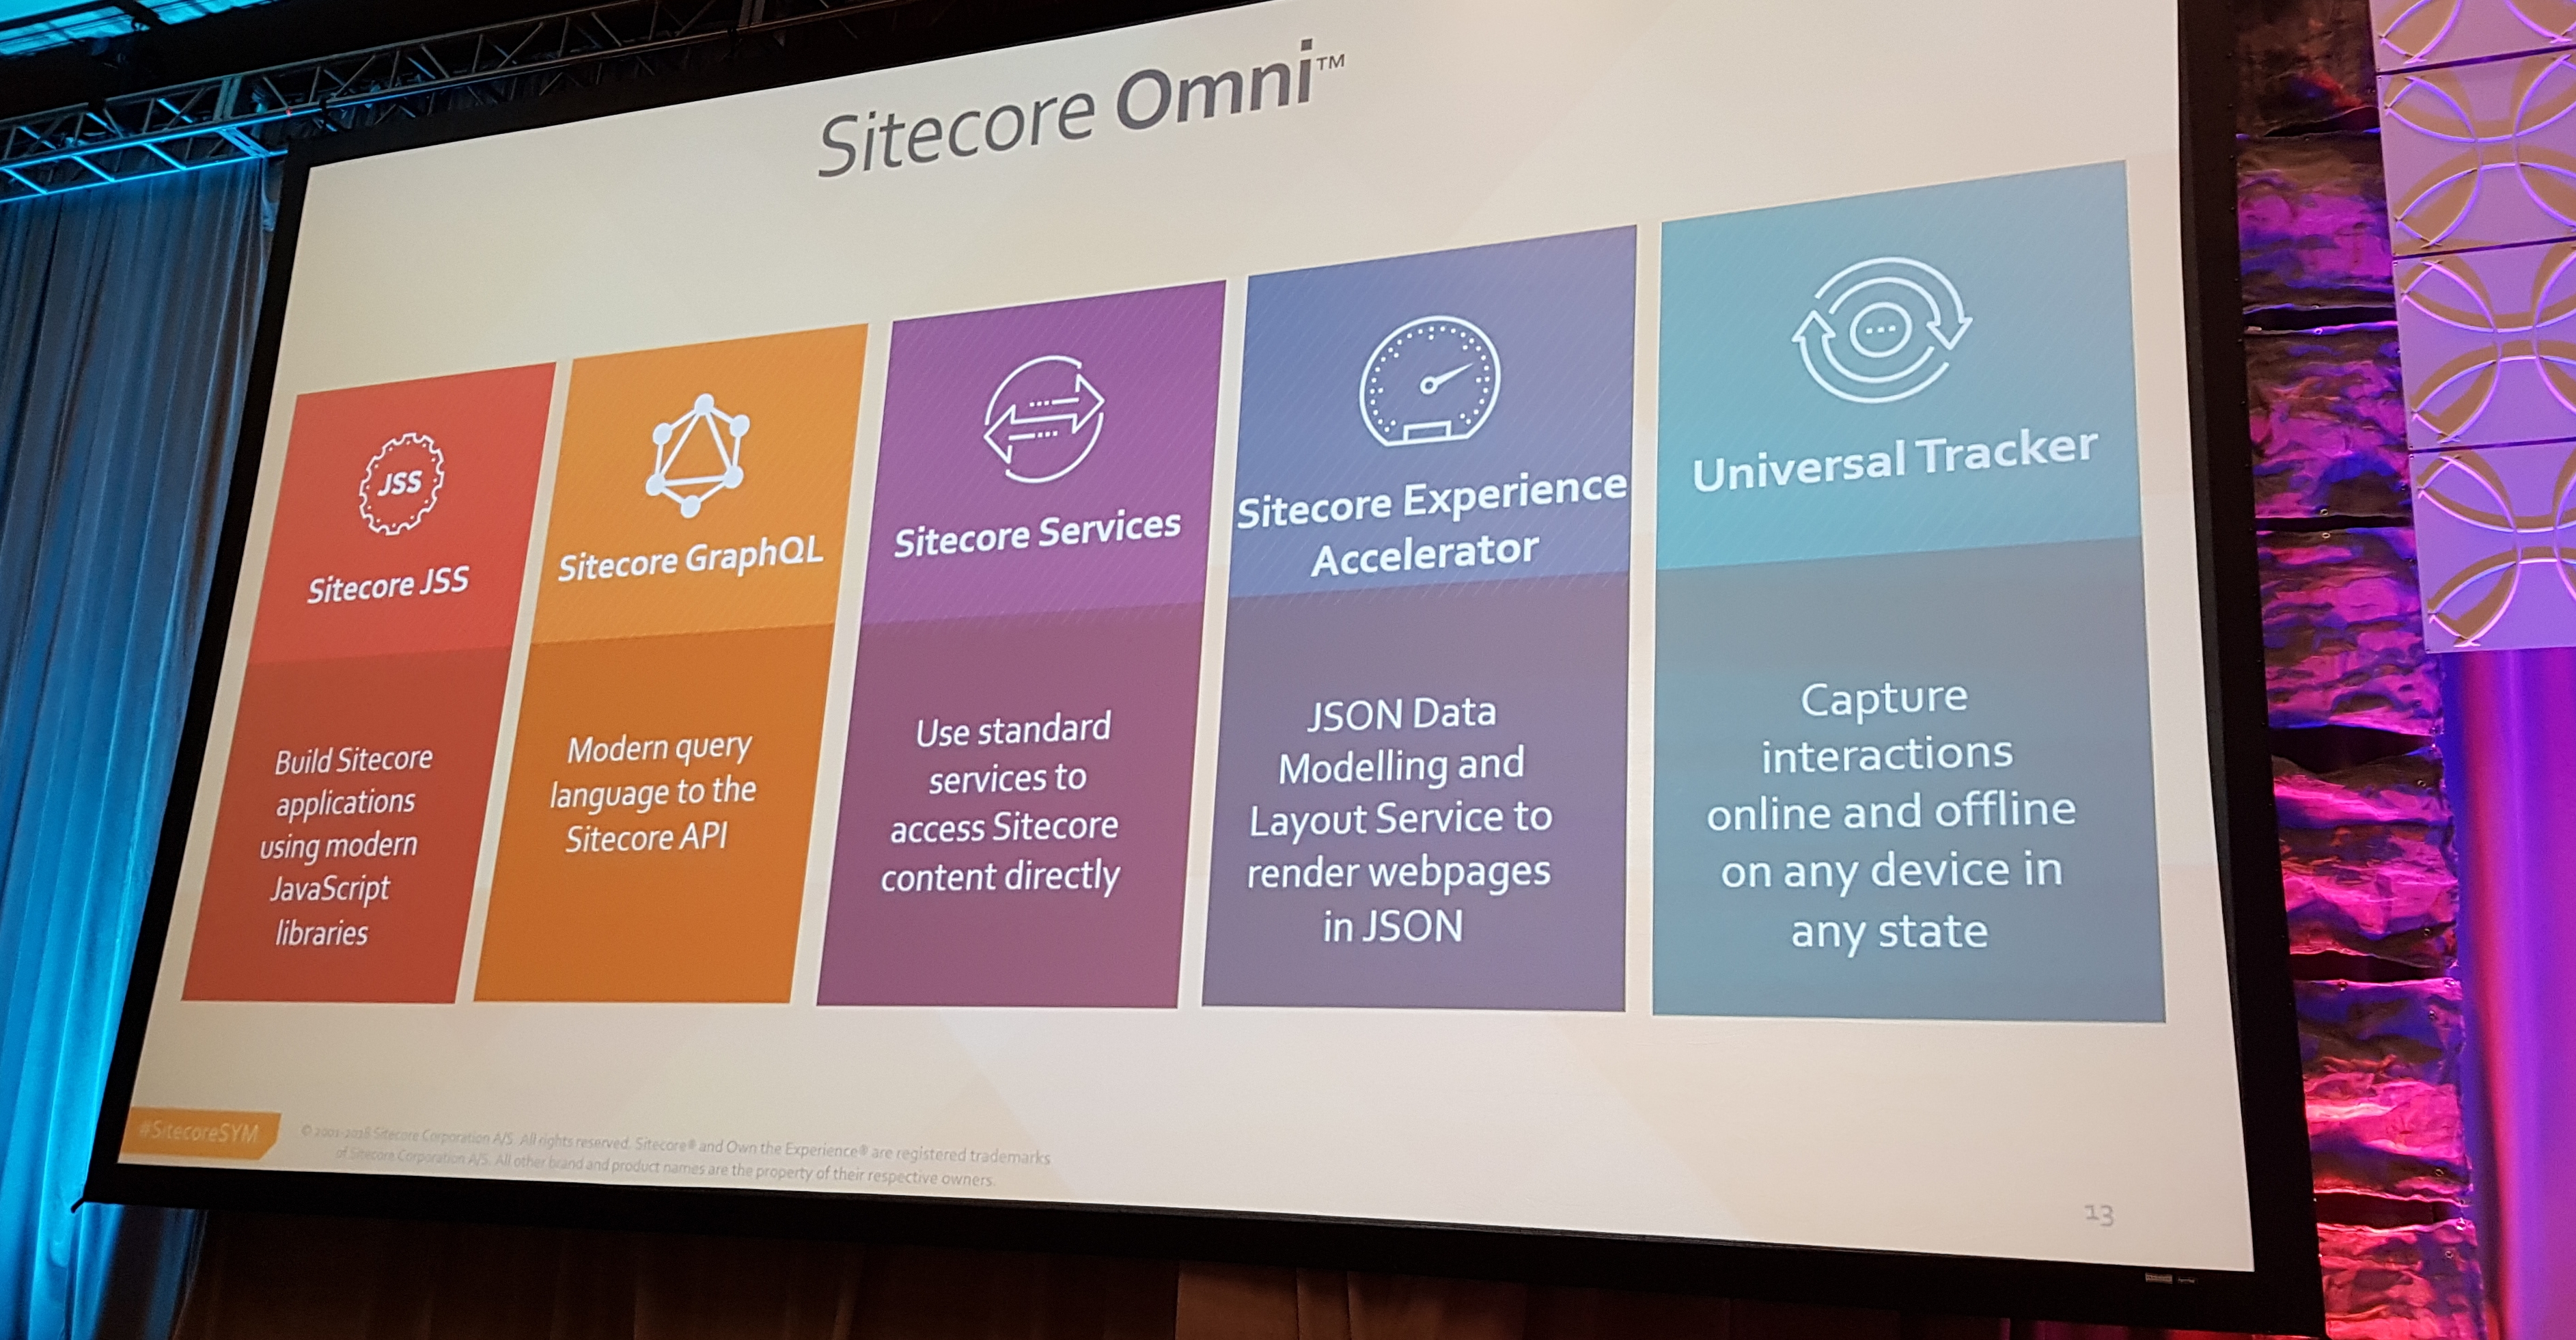 Sitecore Omni